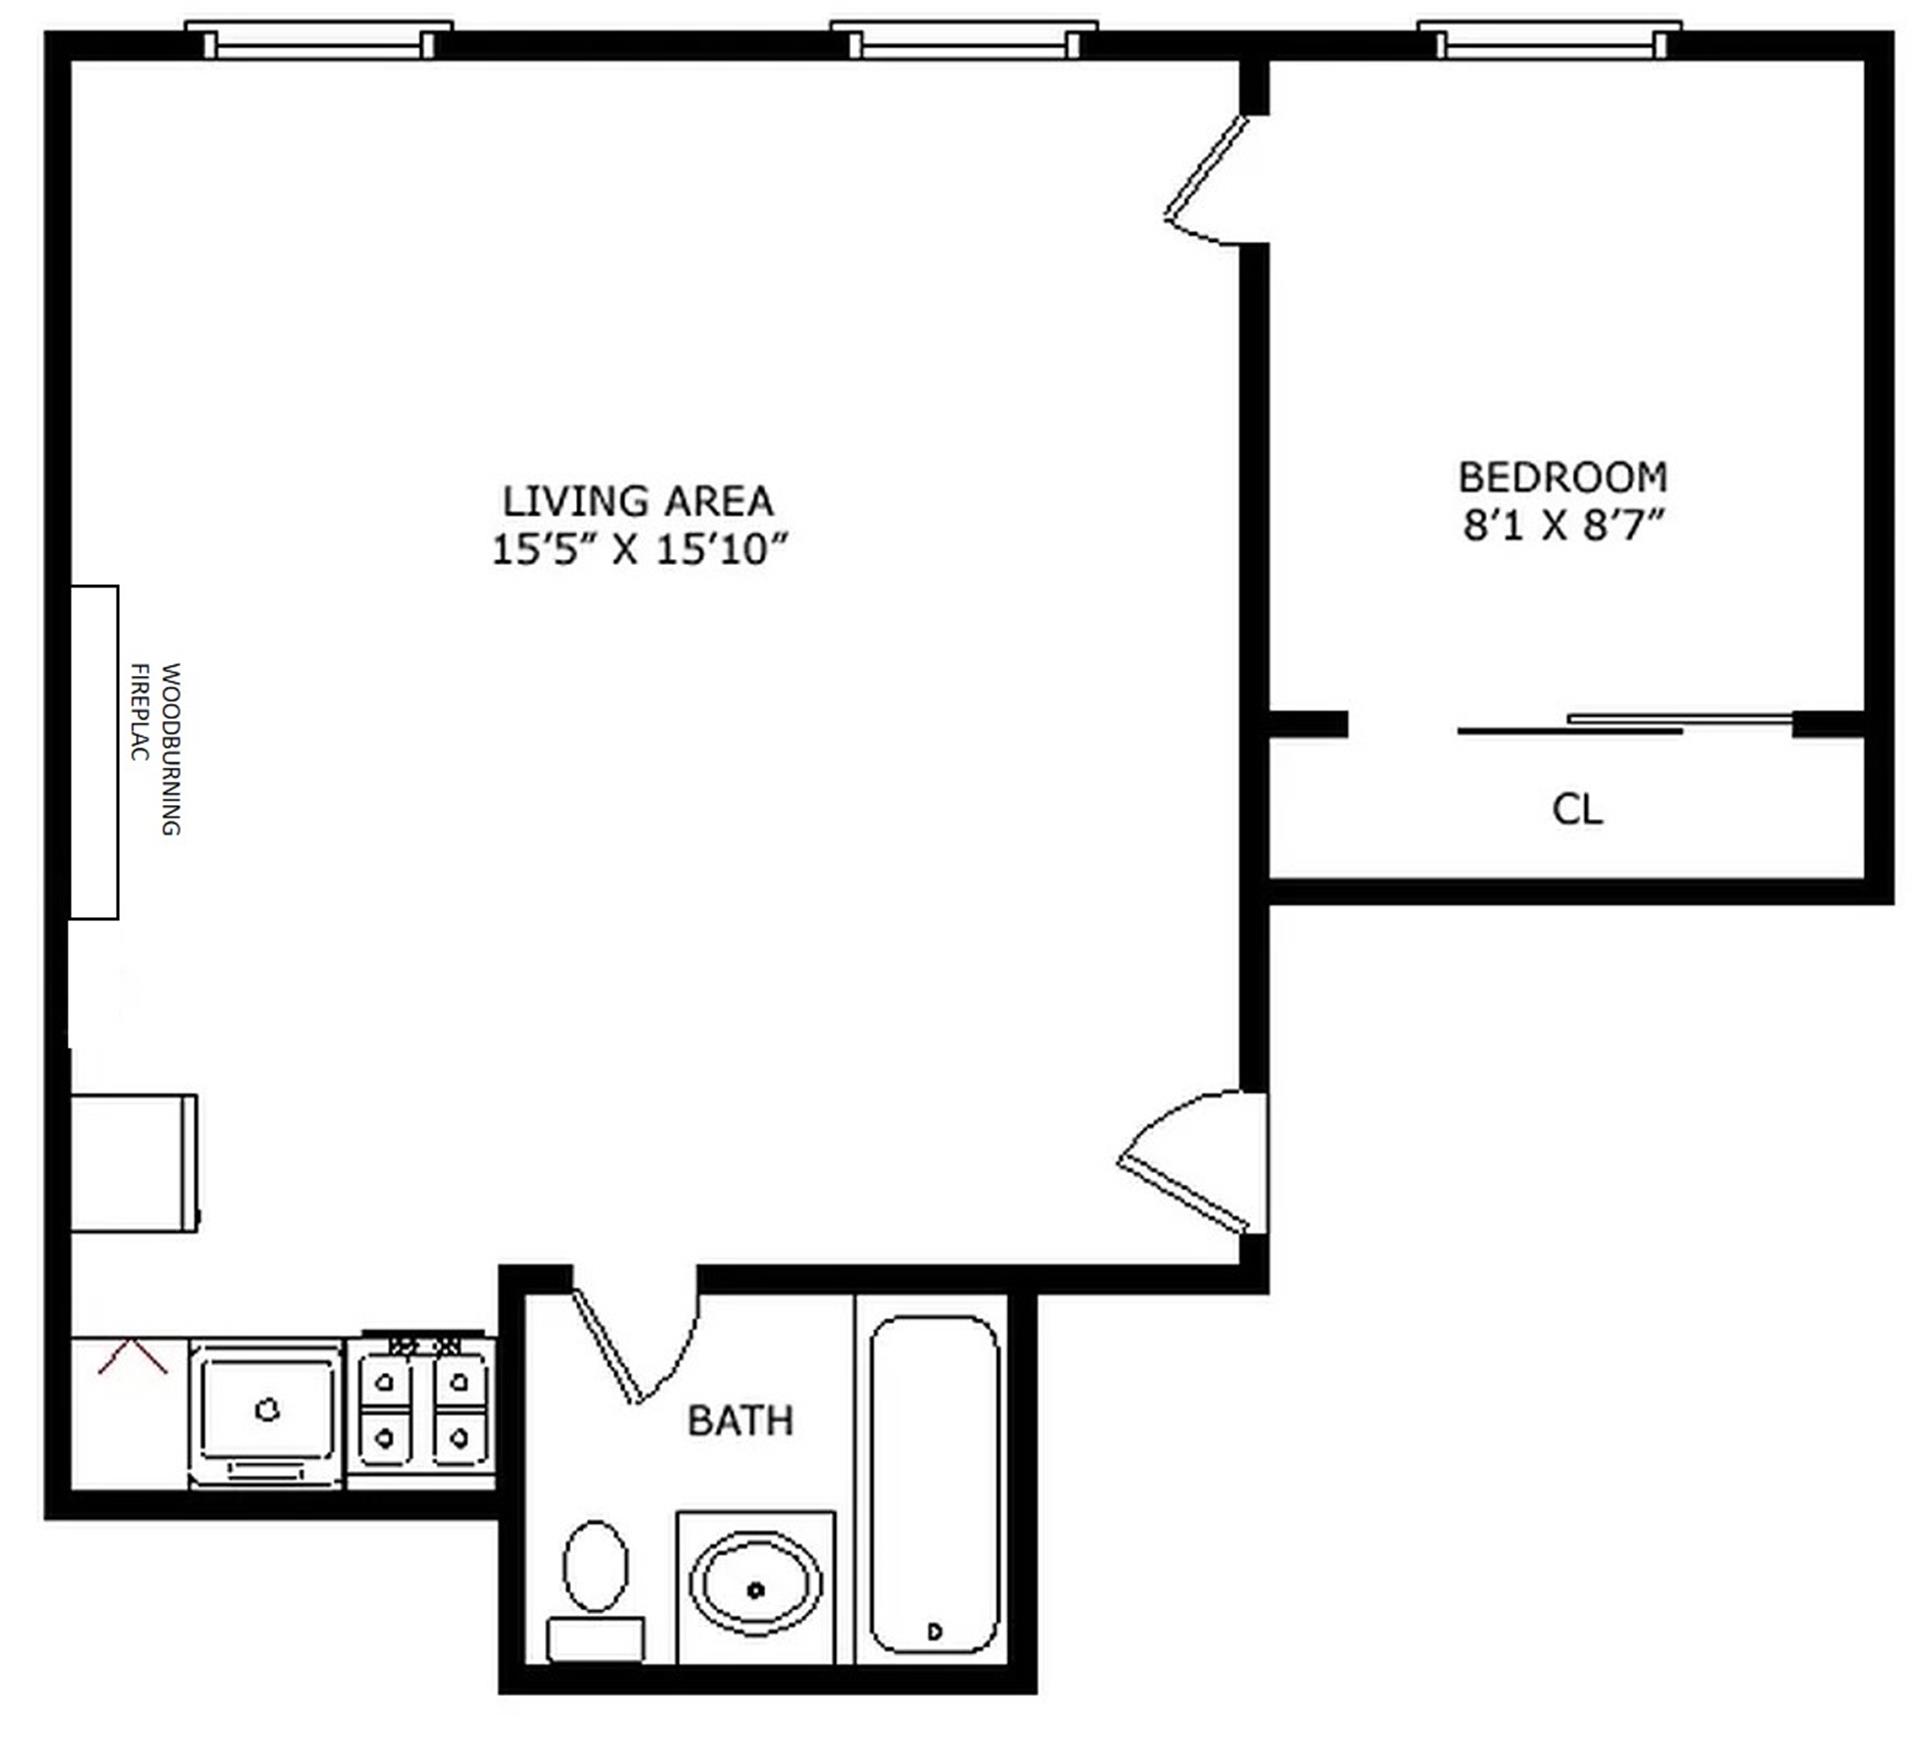 Floorplan for 44 Remsen Street, 8